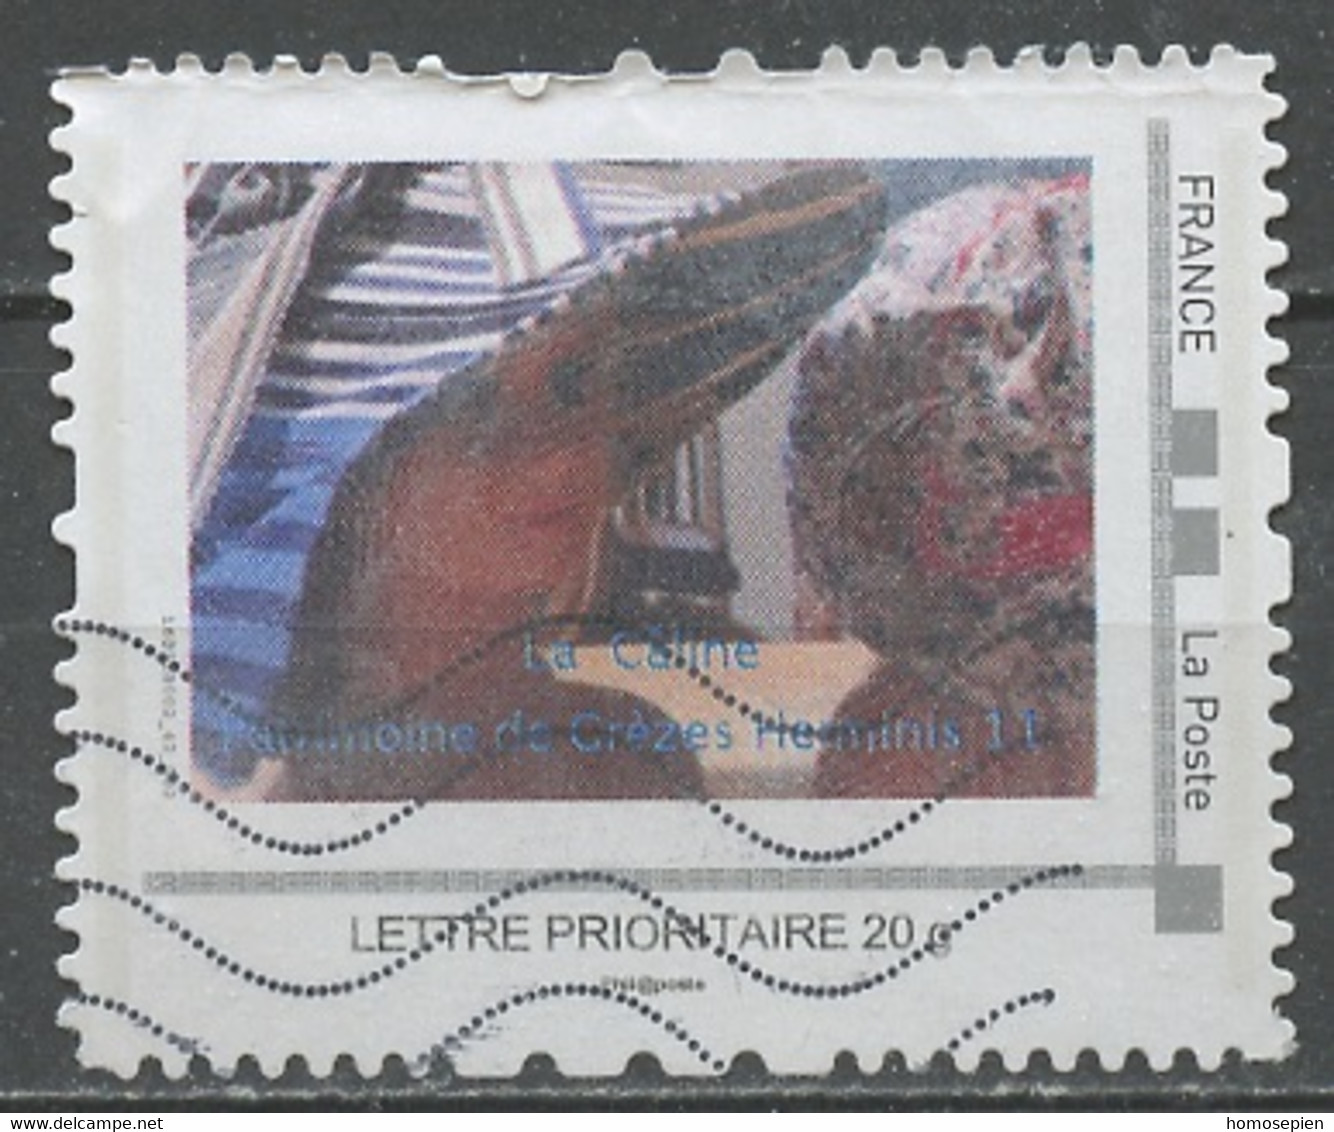 France - Frankreich Timbre Personnalisé 2007 Y&T N°MTAM01-011 - Michel N°BS(?) (o) - Patrimoine De Grèzes Herminis - Used Stamps